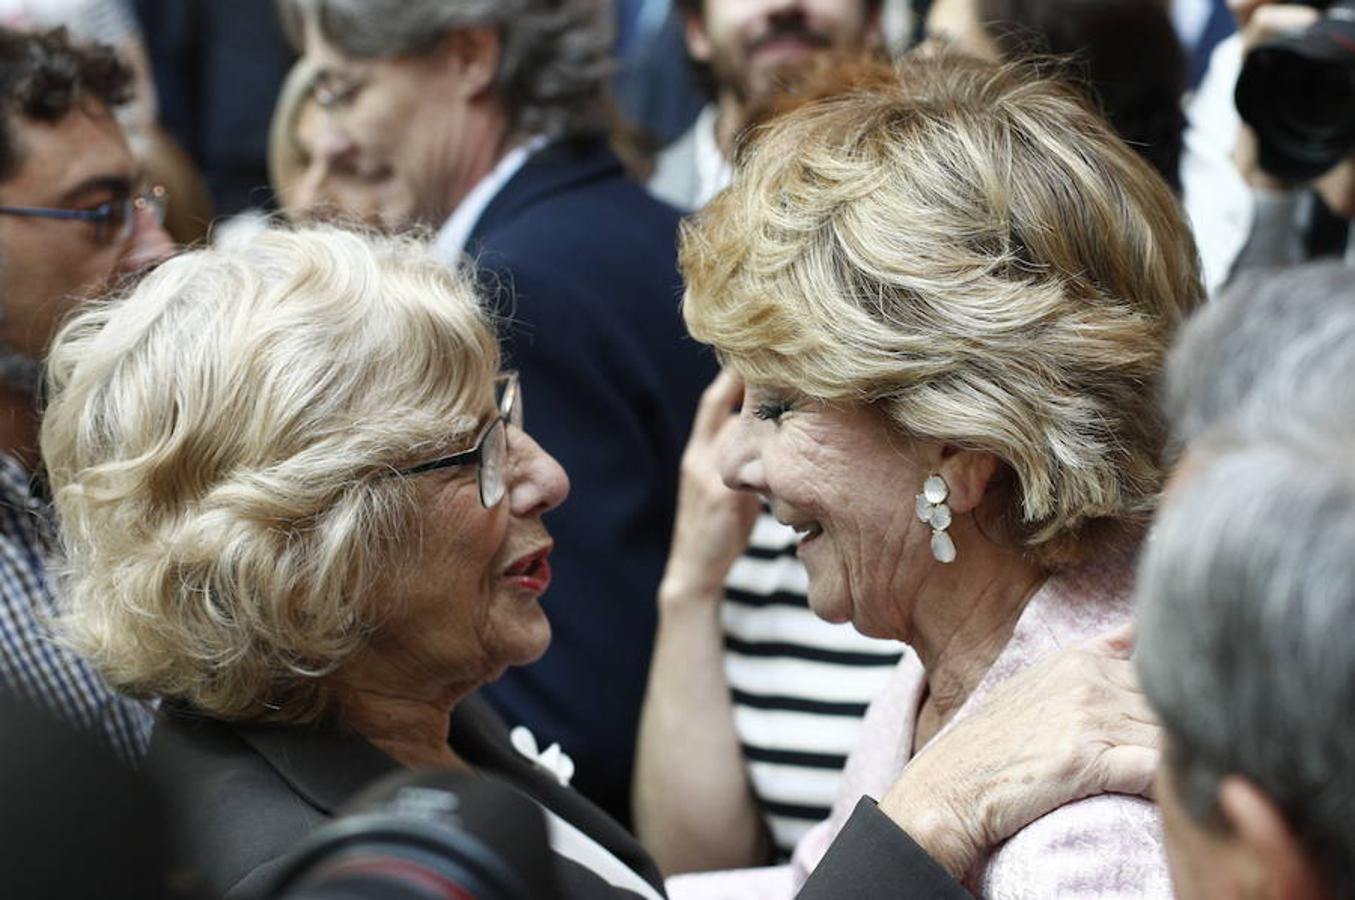 Las imágenes más destacadas de los actos oficiales del Dos de Mayo en Madrid. Reencuentro entre la actual alcaldesa de Madrid, Manuela Carmena y la expresidenta de la Comunidad de Madrid, Esperanza Aguirre.